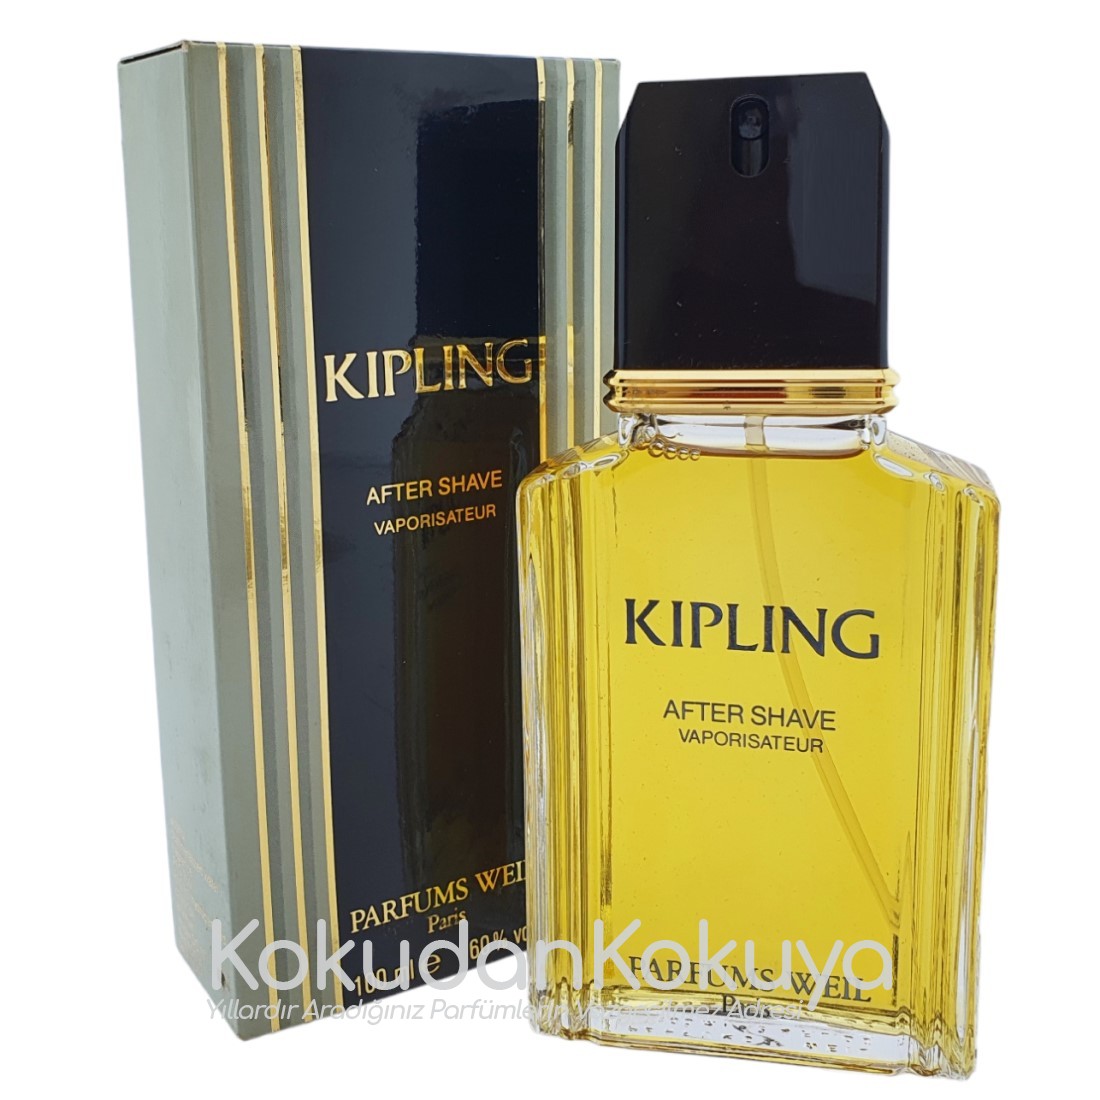 PARFUMS WEIL Kipling (Vintage) Erkek Cilt Bakım Ürünleri Erkek 100ml Traş Losyonu Sprey 